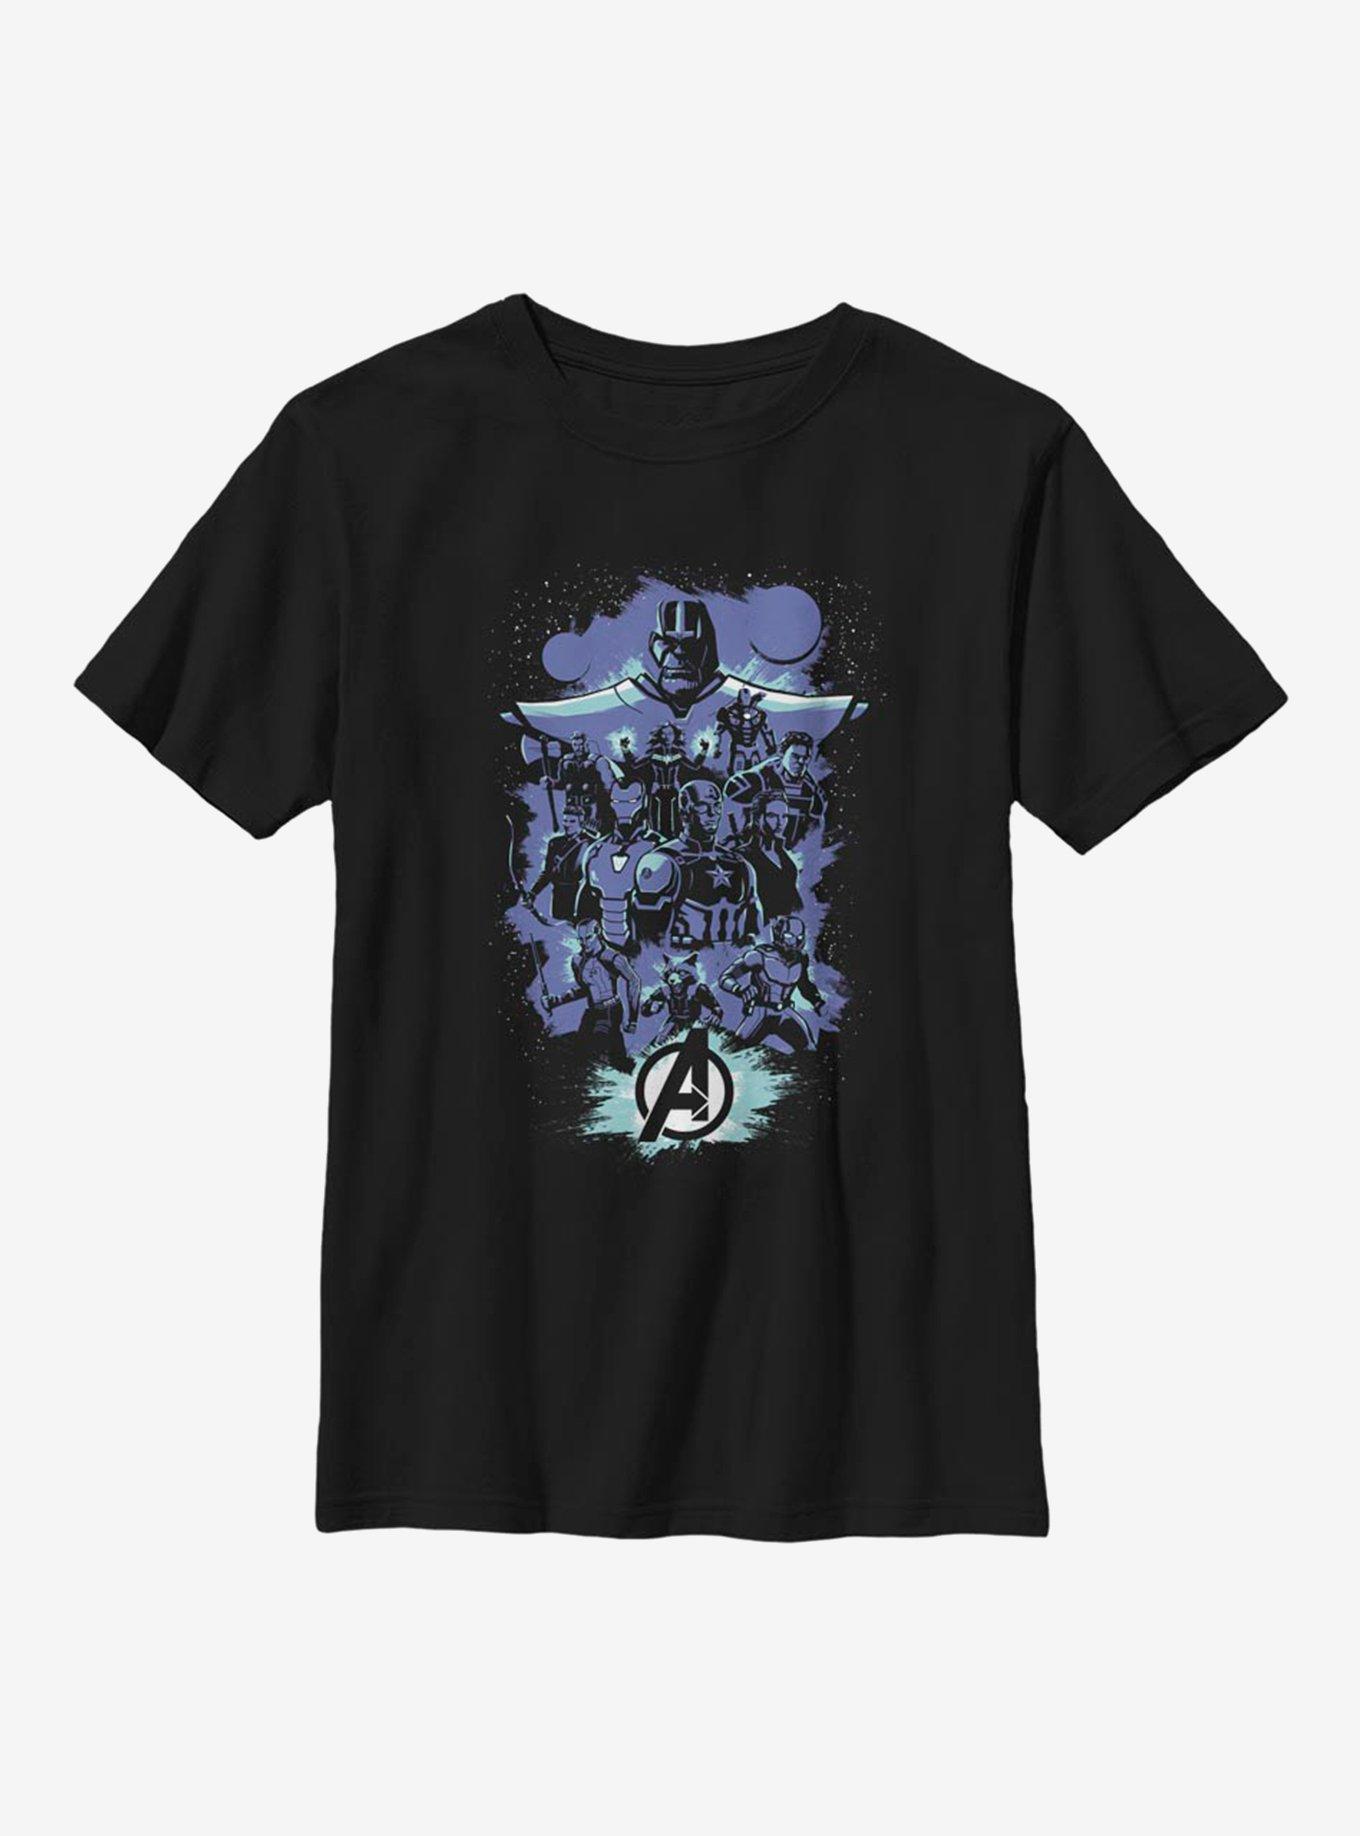 Marvel Avengers Endgame Pop Art Youth T-Shirt, BLACK, hi-res